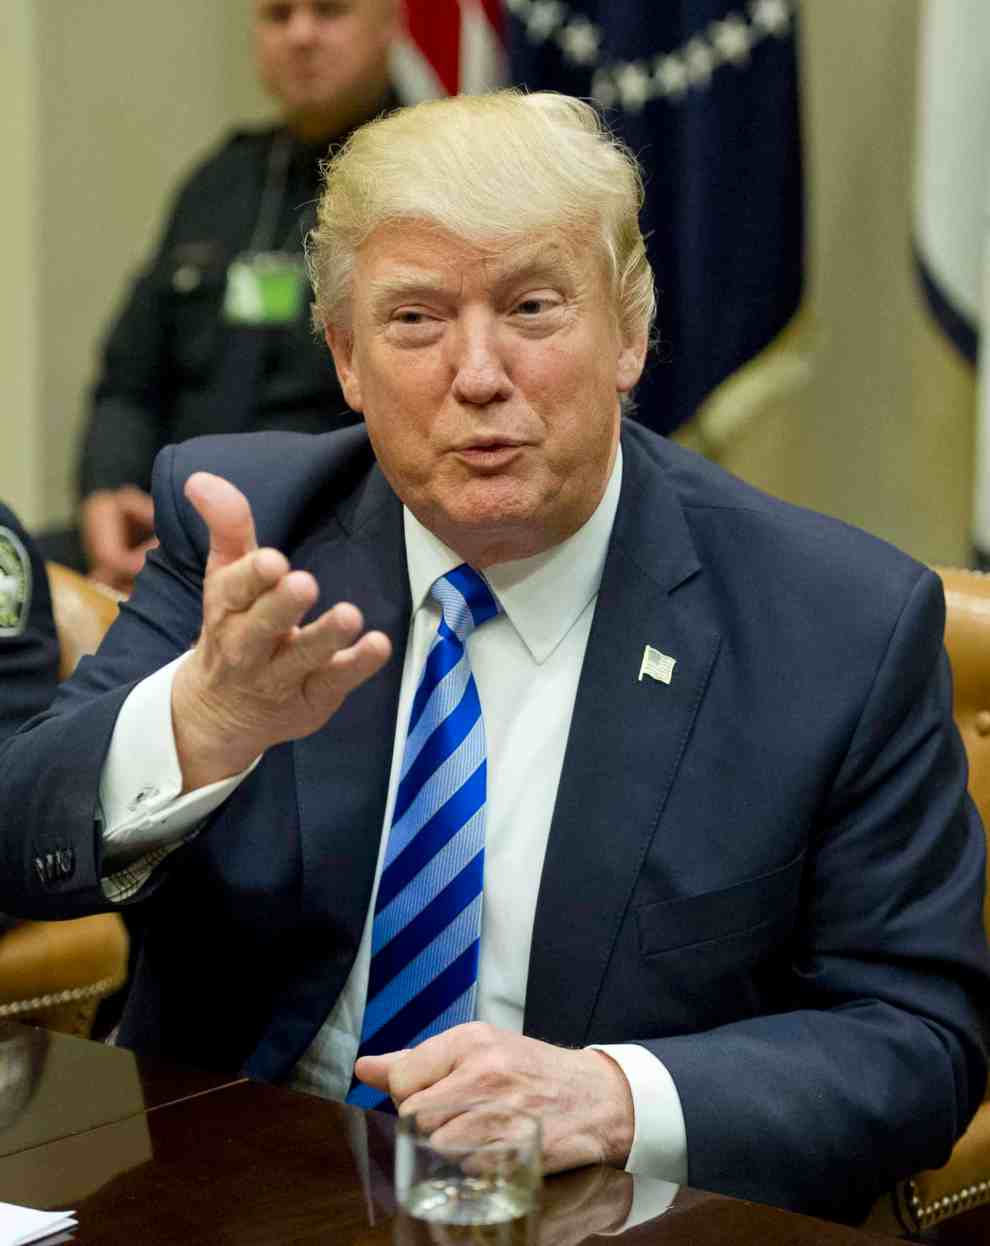 Donald Trump gesturing at podium